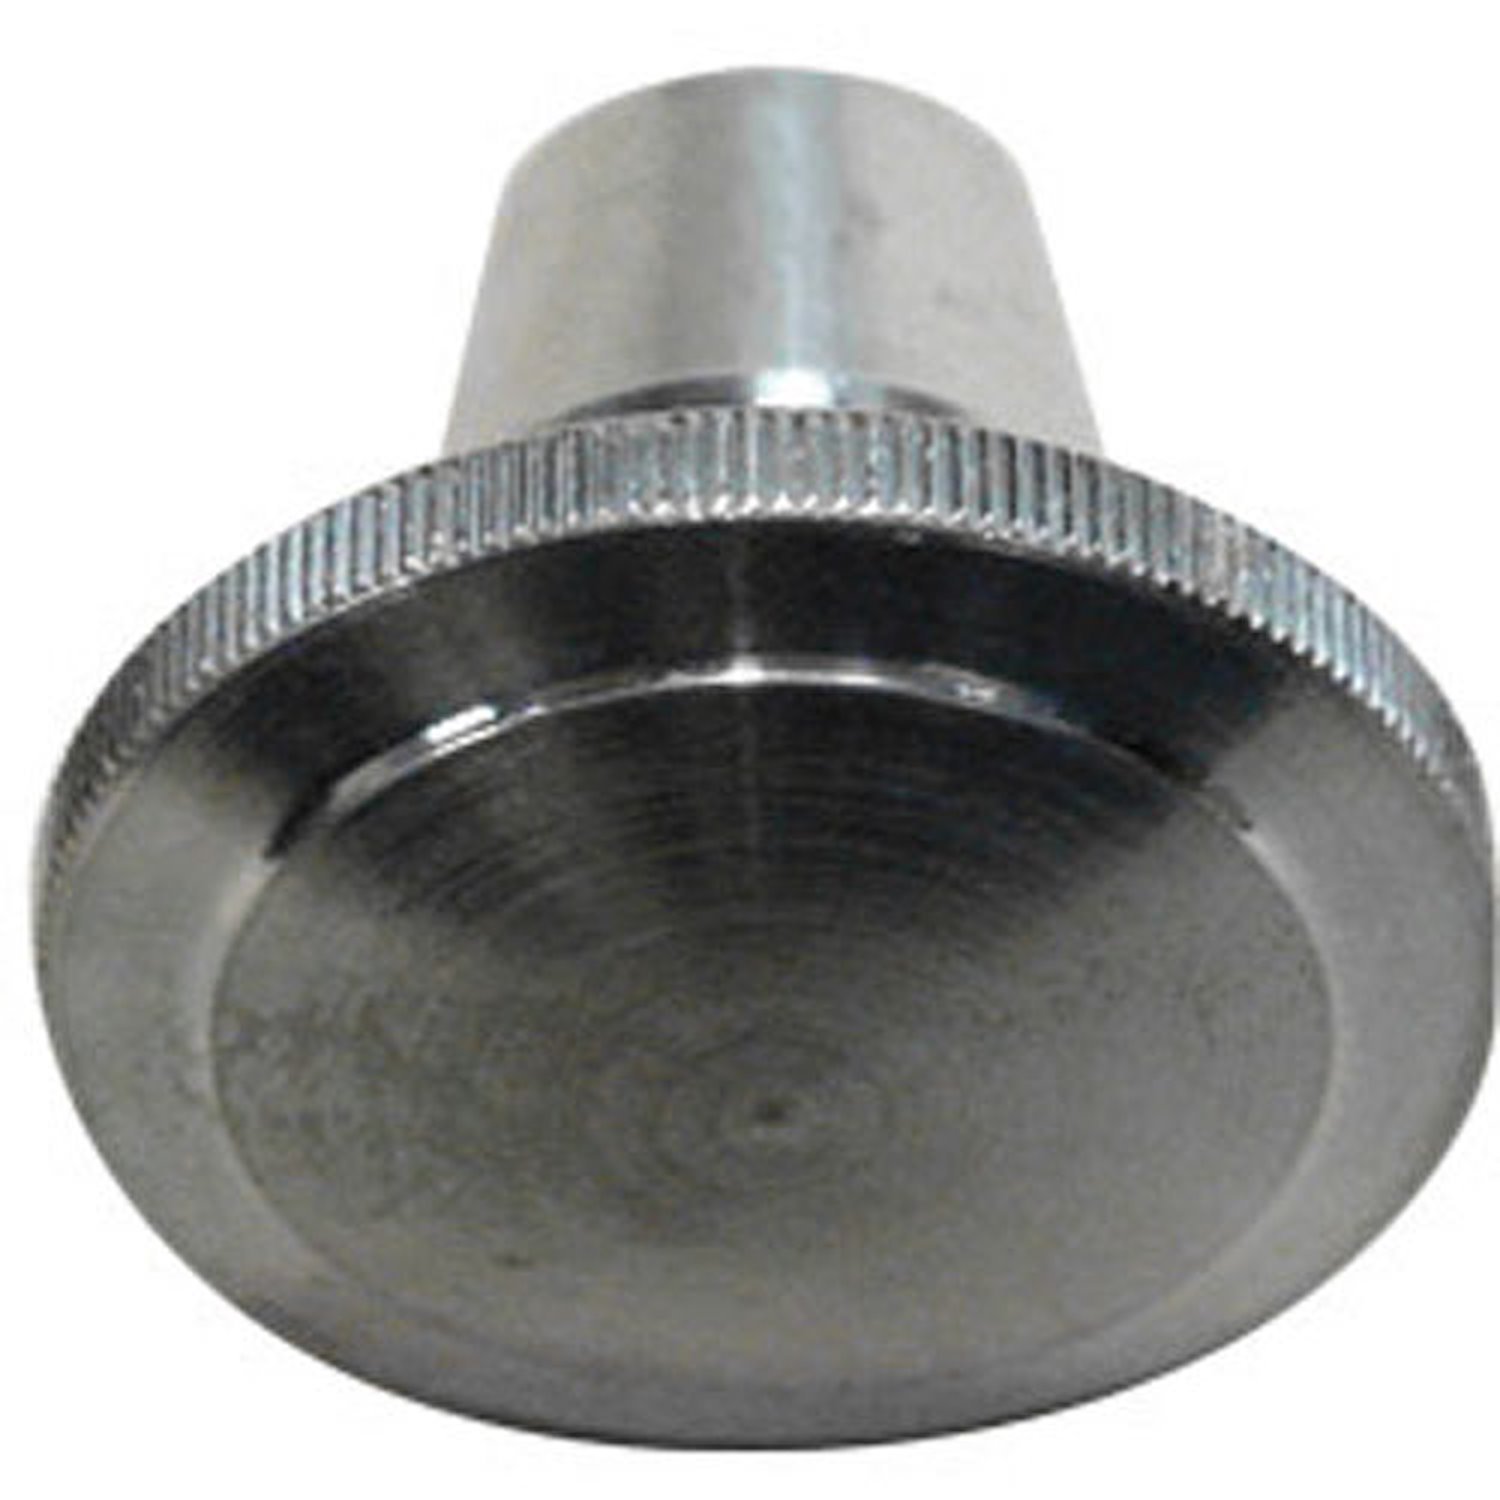 Billet Aluminum Headlight Knob